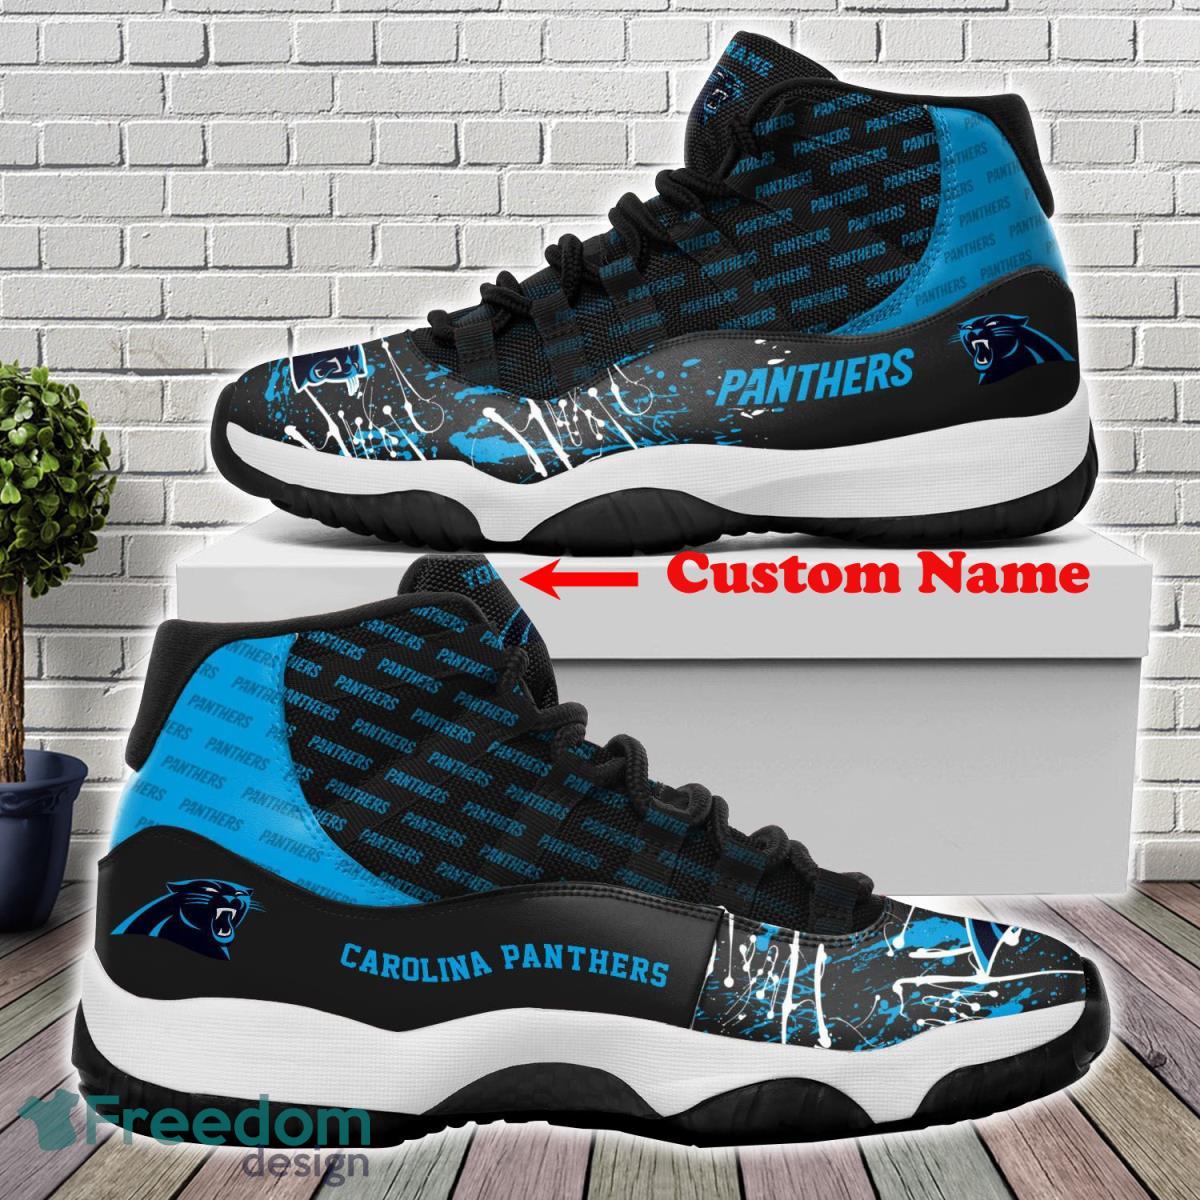 Carolina Panthers Custom Name Air Jordan 11 Sneakers For Fans